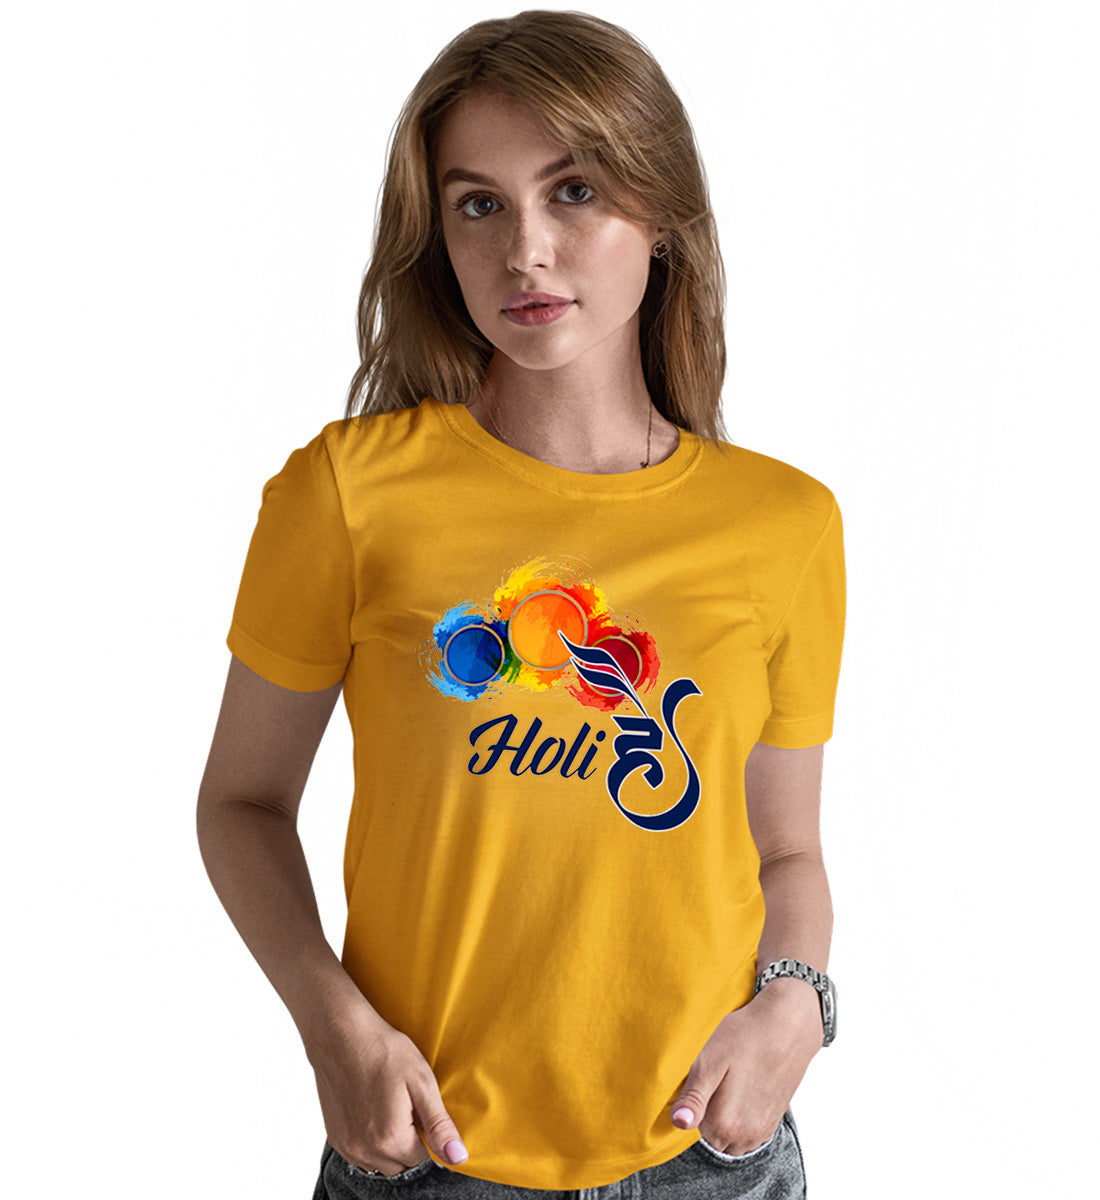 Holi Hai Festival Matching Printed Tshirts